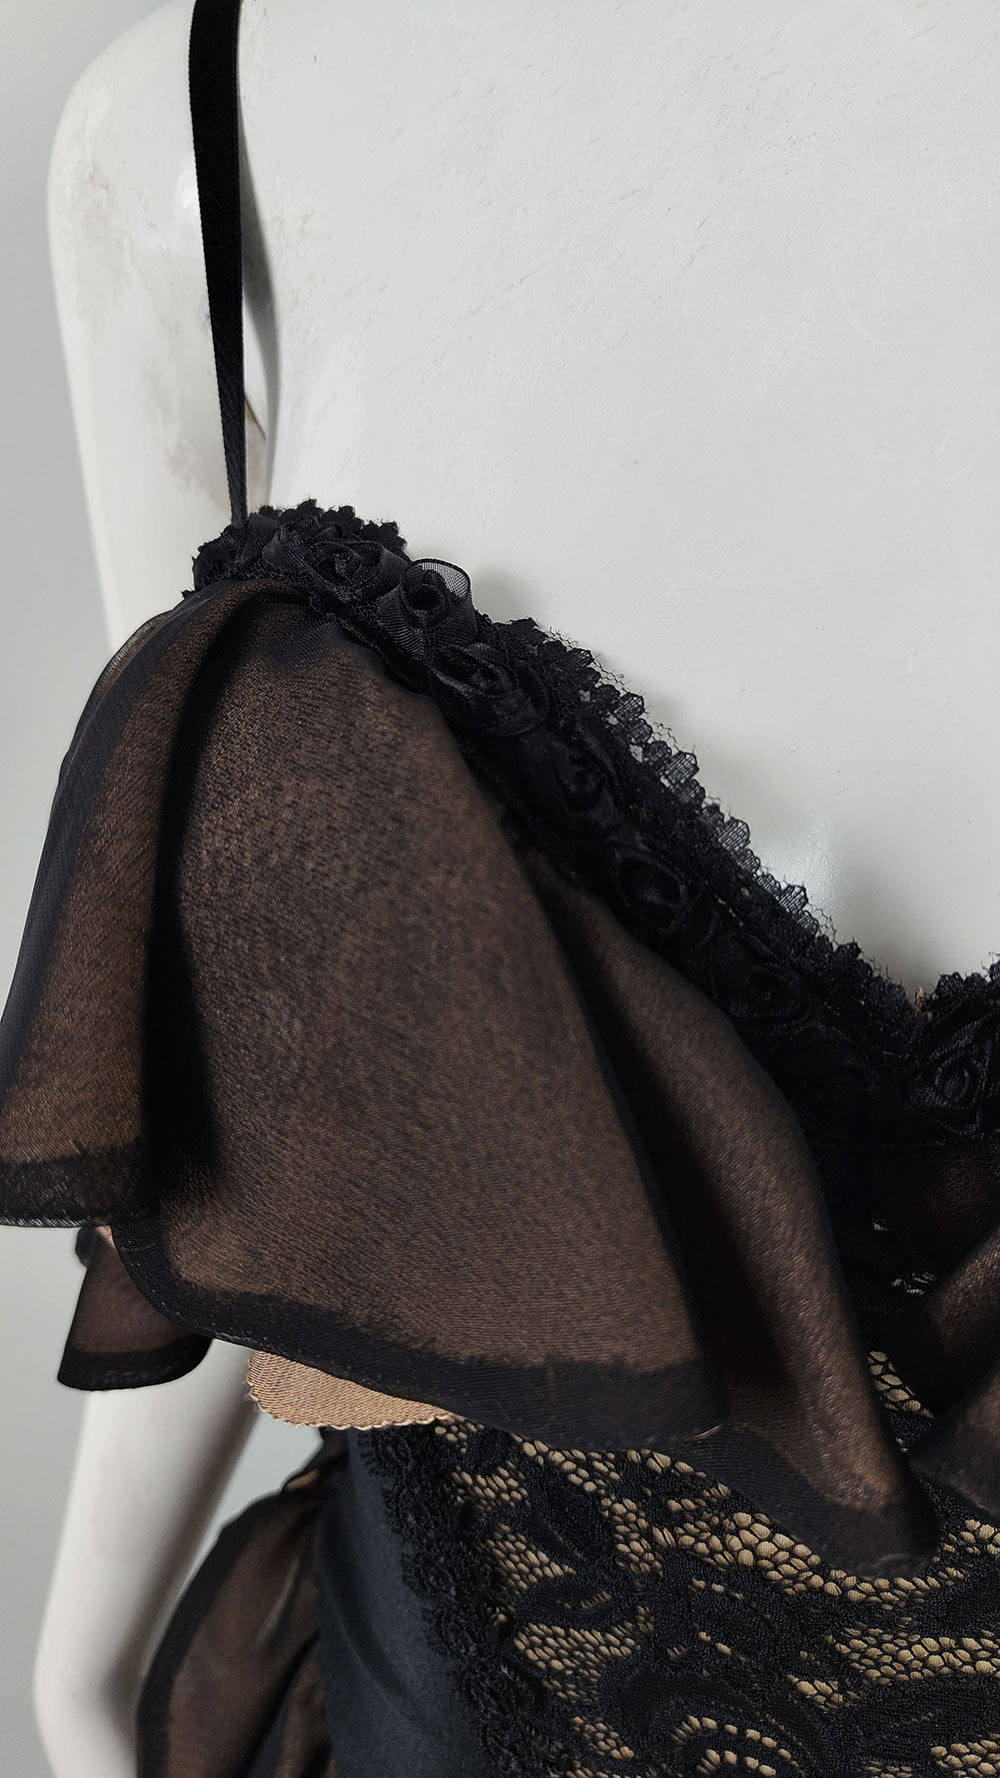 Catwalk Collection Vintage Black Lace & Satin Corset Dress